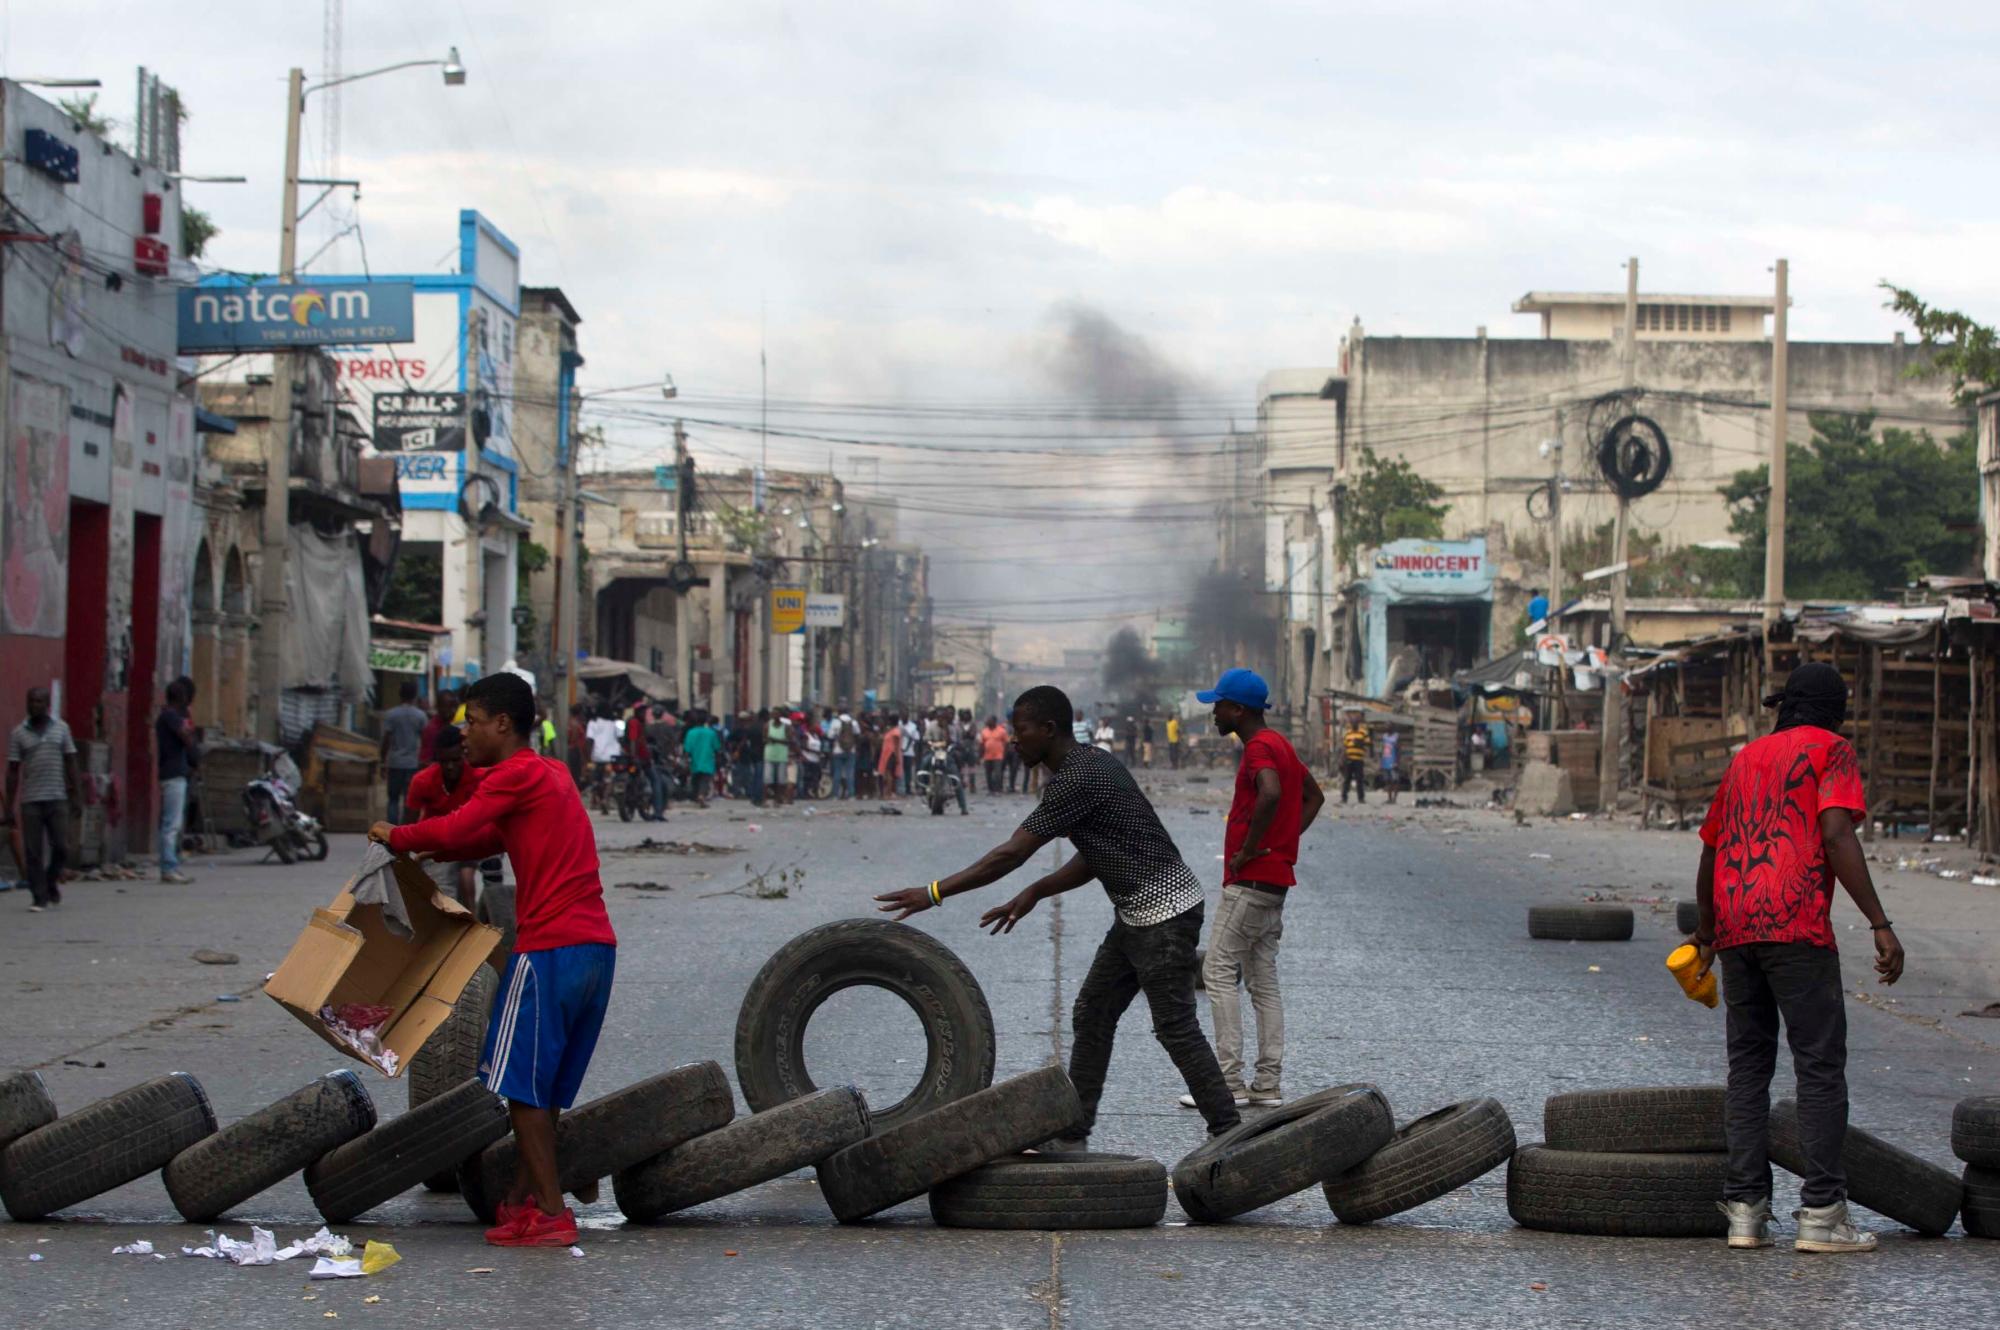 Los manifestantes bloquean la carretera con neumáticos durante una protesta que exige la renuncia del presidente Jovenel Moïse. Los manifestantes están enojados por el aumento de la inflación y por el hecho de que el gobierno no haya procesado la malversación de fondos Mil millones del programa venezolano que envió petróleo descontado a Haití.